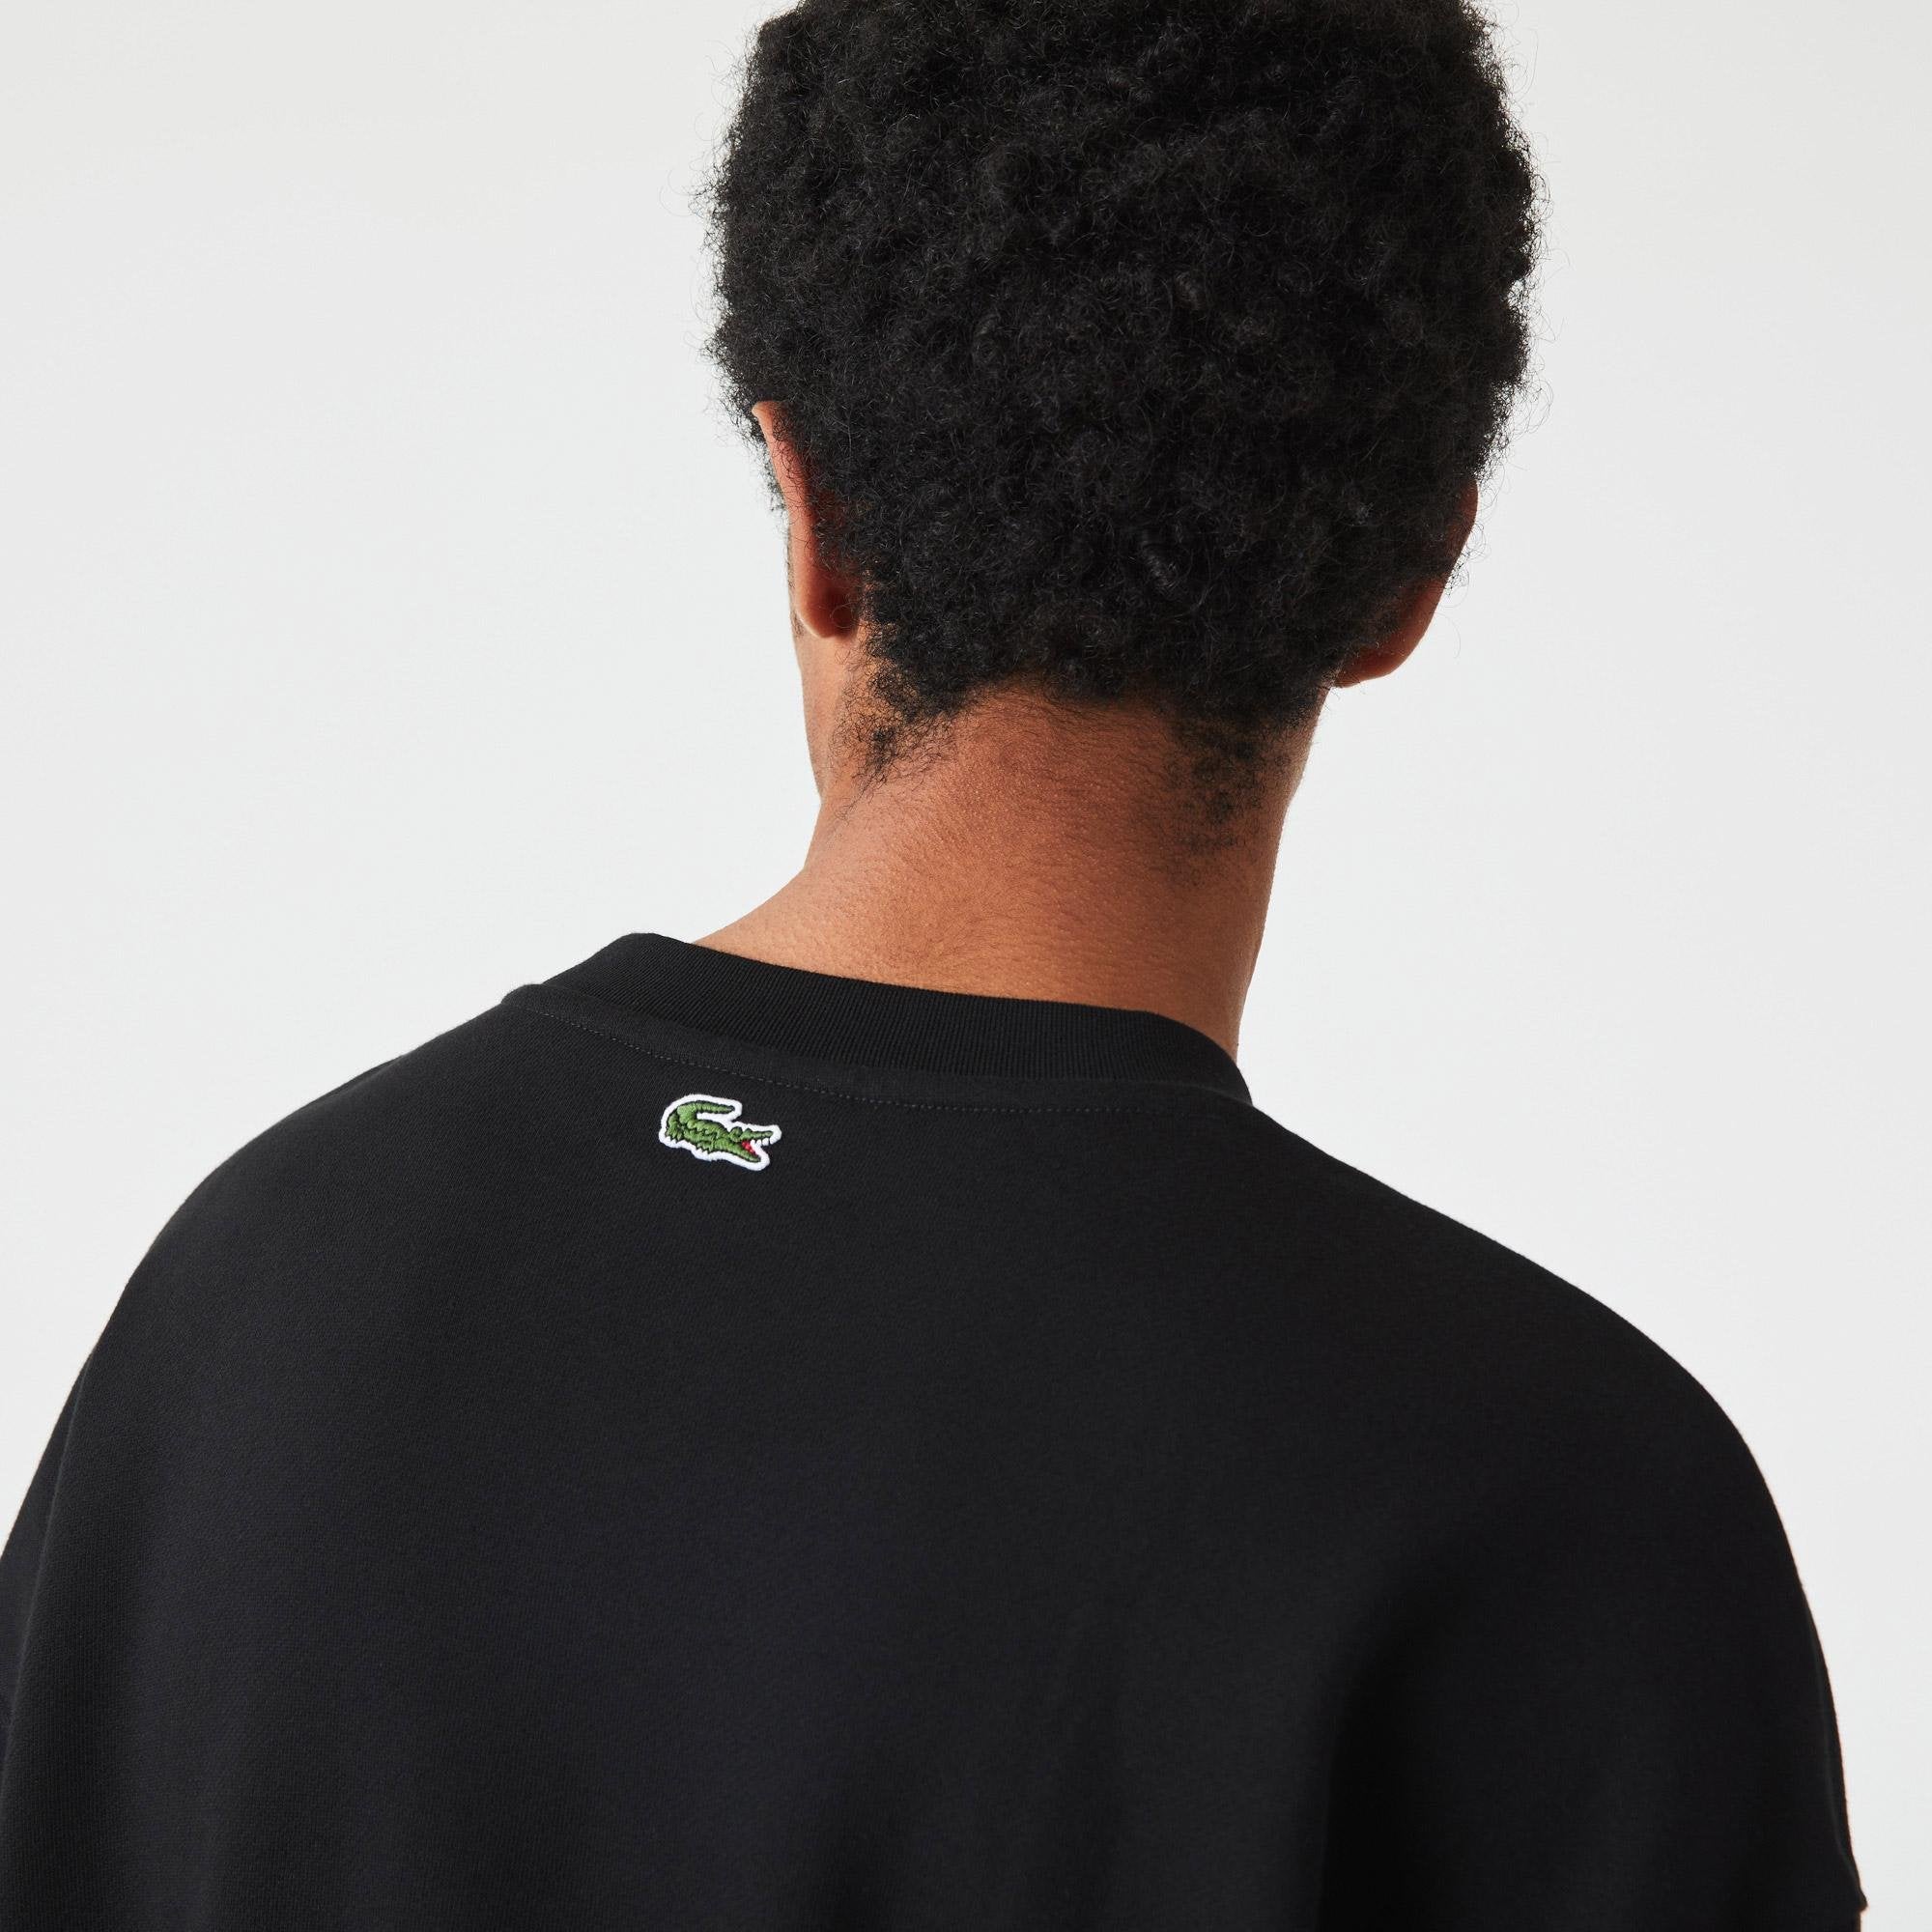 Lacoste - Loose Fit Monogram Print Sweatshirt - Black